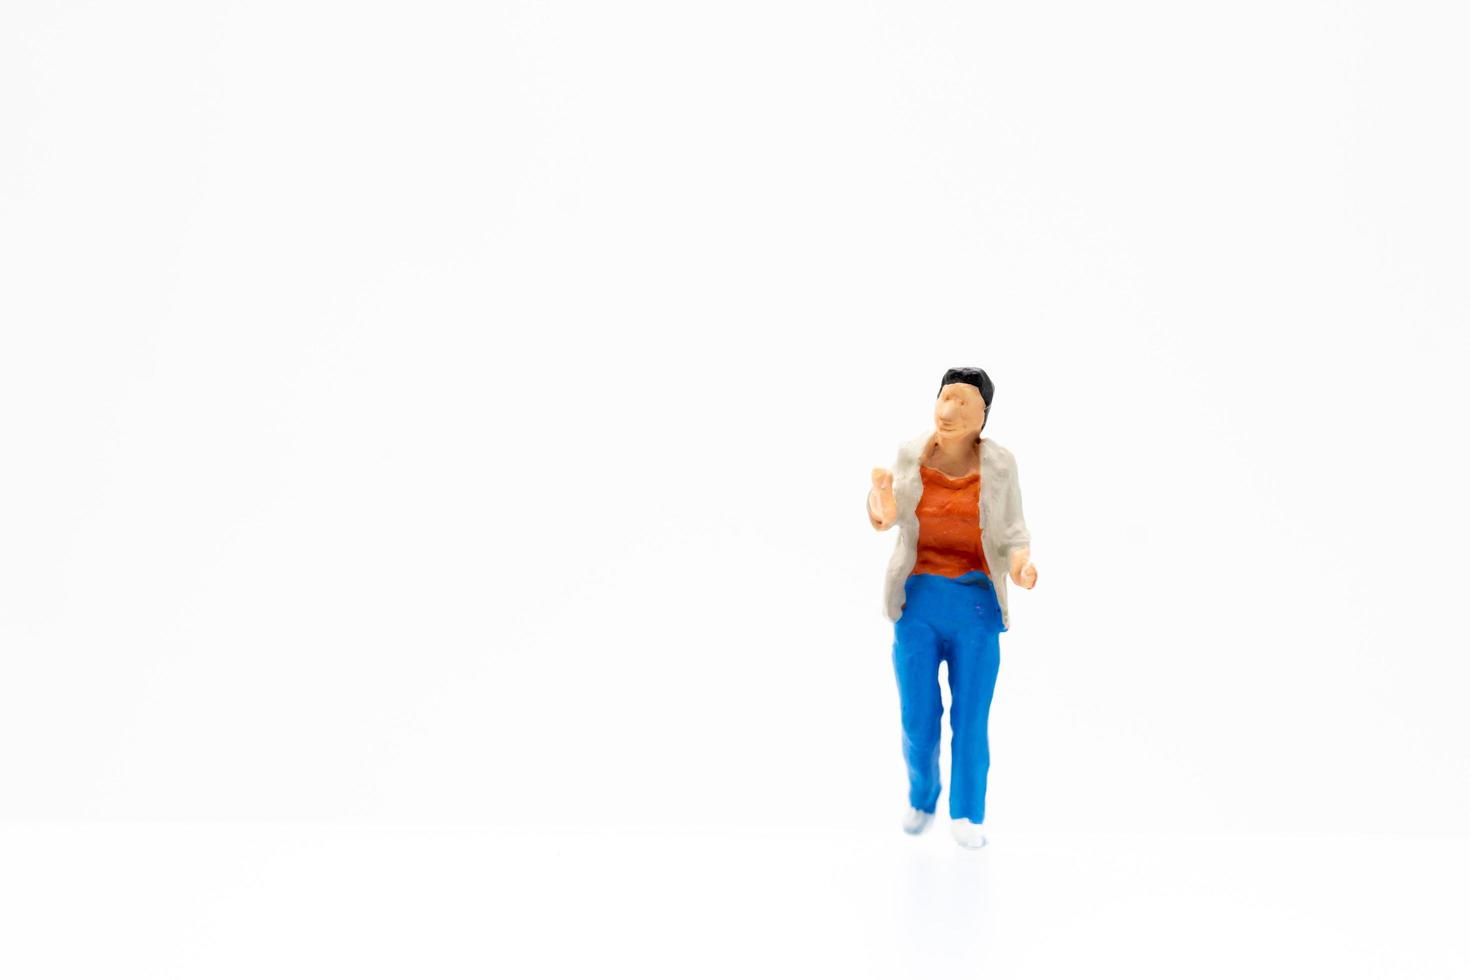 eine Miniaturperson, die auf einem weißen Hintergrund steht foto